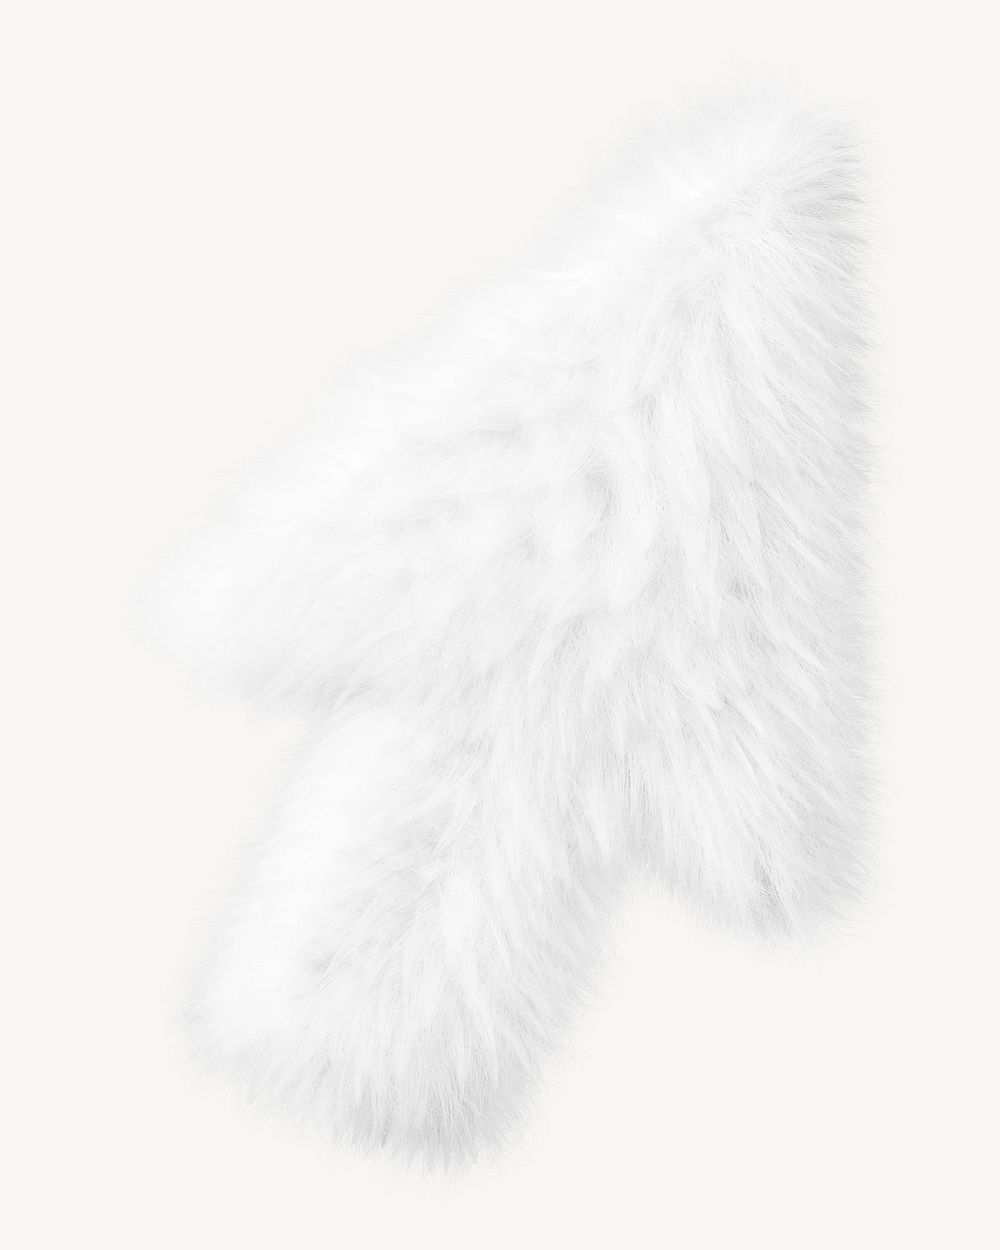 White arrow in fluffy 3D shape illustration